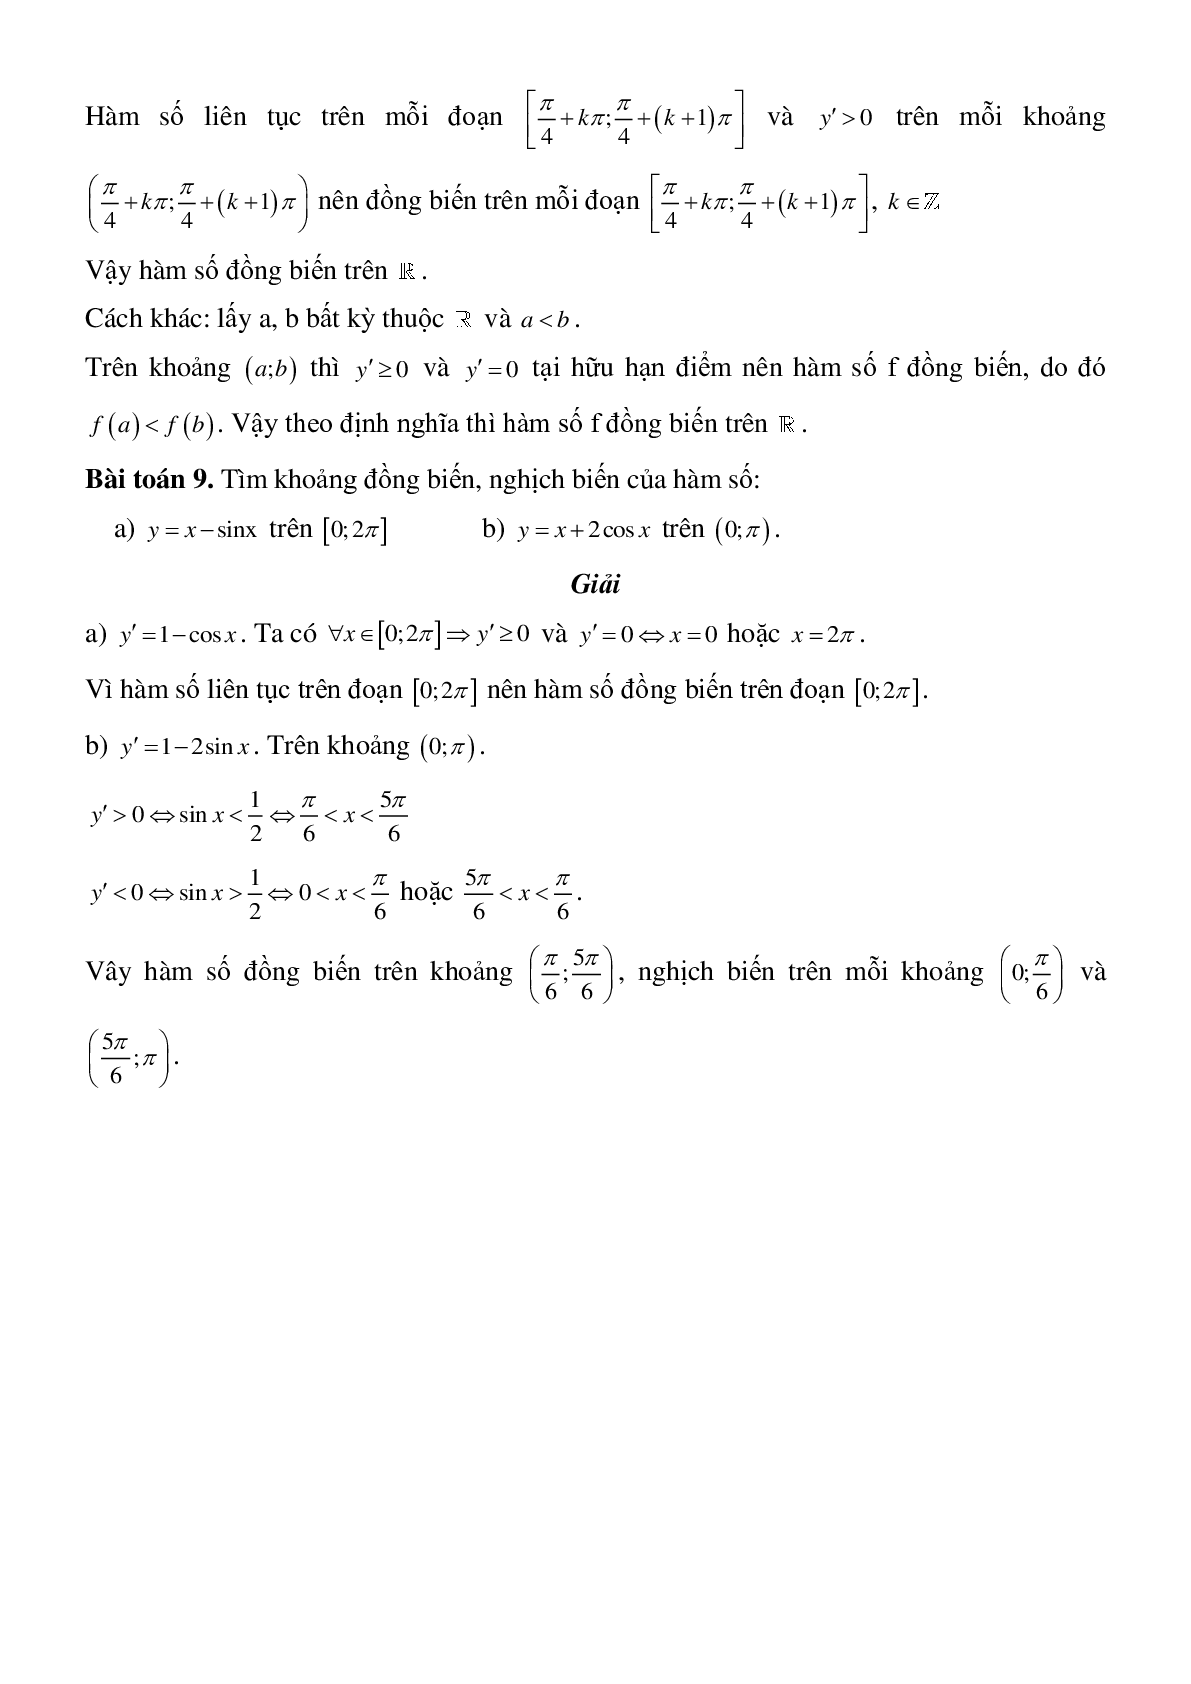 Tính đơn điệu của hàm số - Ôn thi THPT QG môn Toán (trang 7)